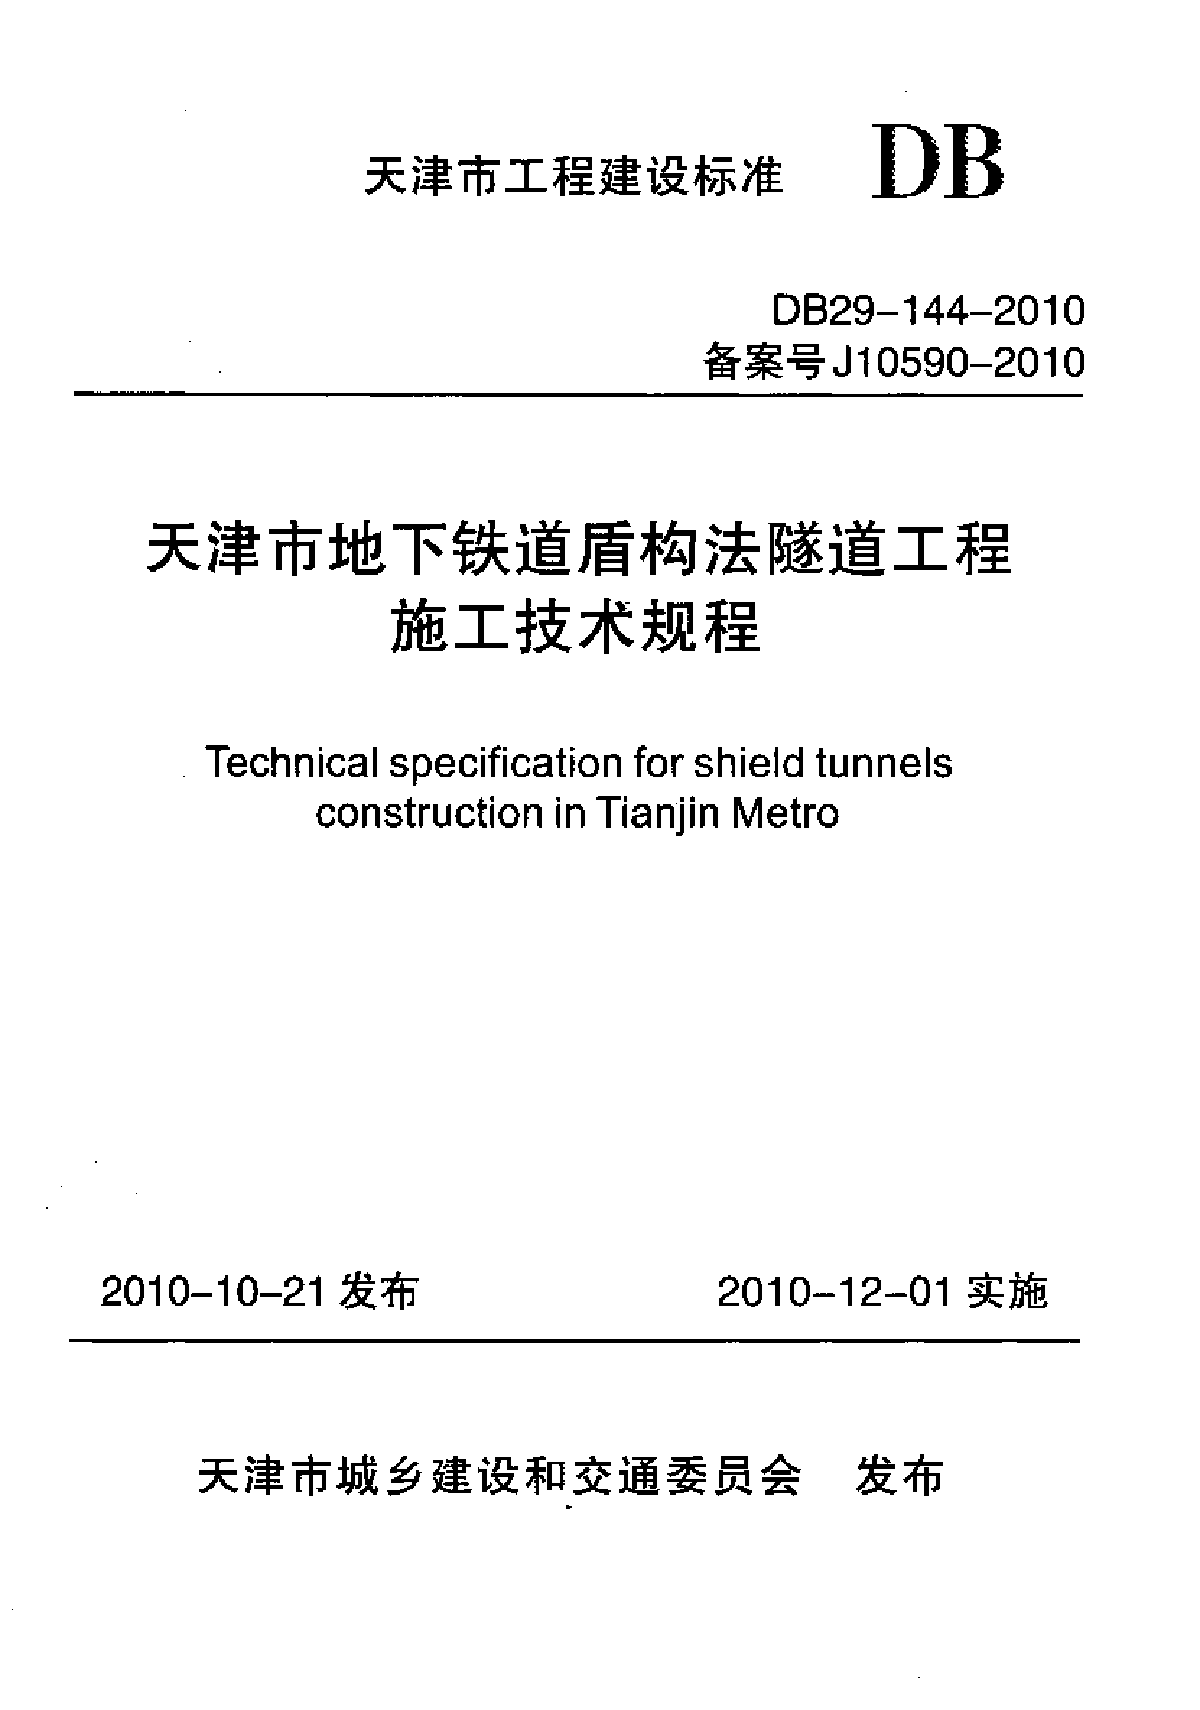 天津市地下铁道盾构法隧道工程施工技术规程